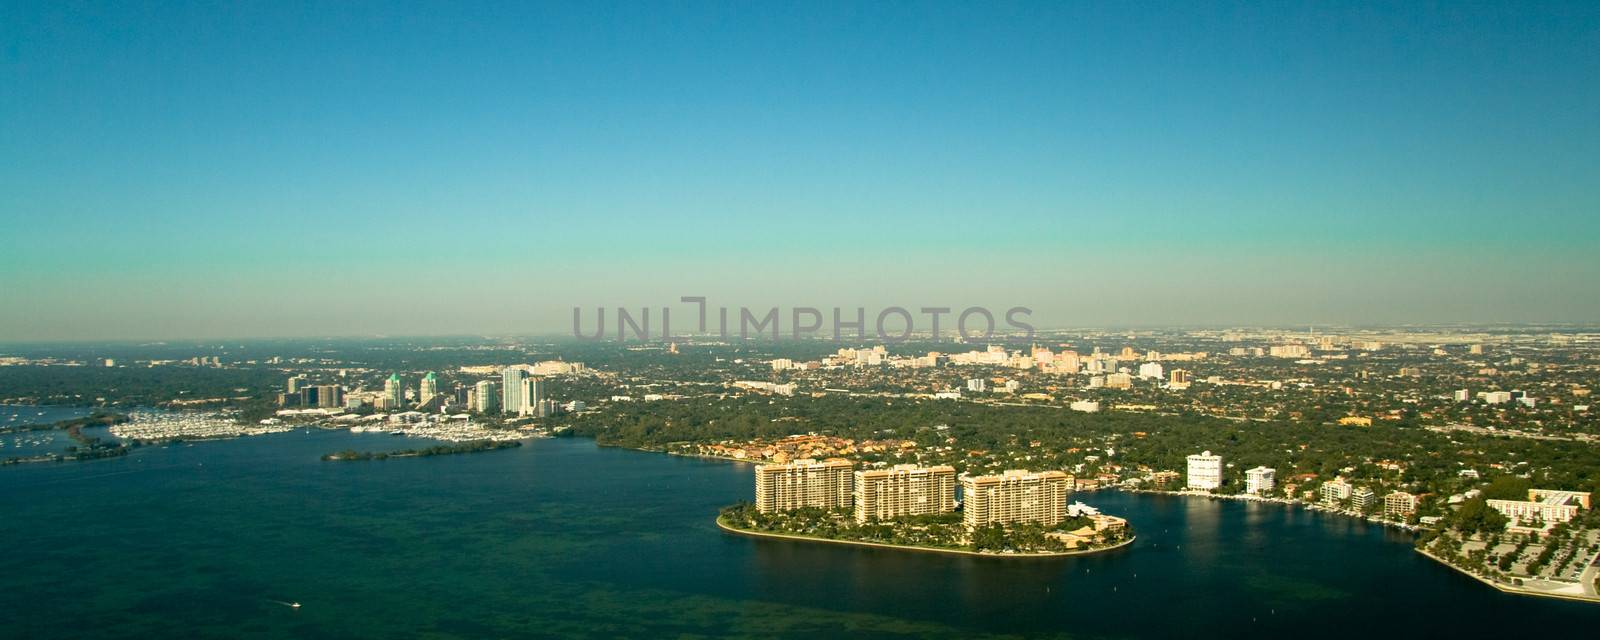 Miami city coastline by CelsoDiniz